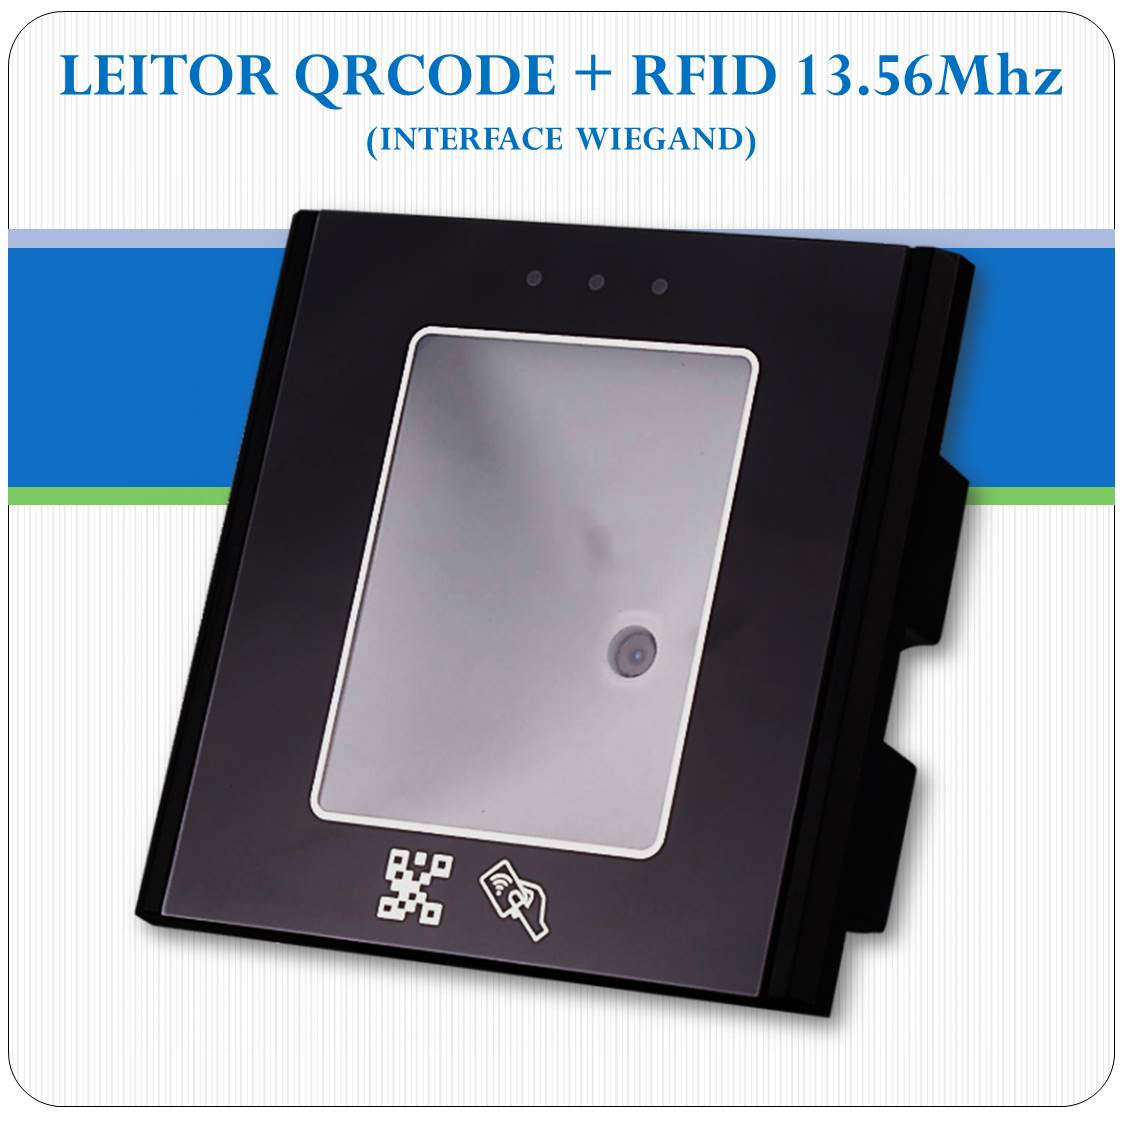 Leitor De Qrcode E Rfid 13.56Mhz Integrados - Interface Wieg26